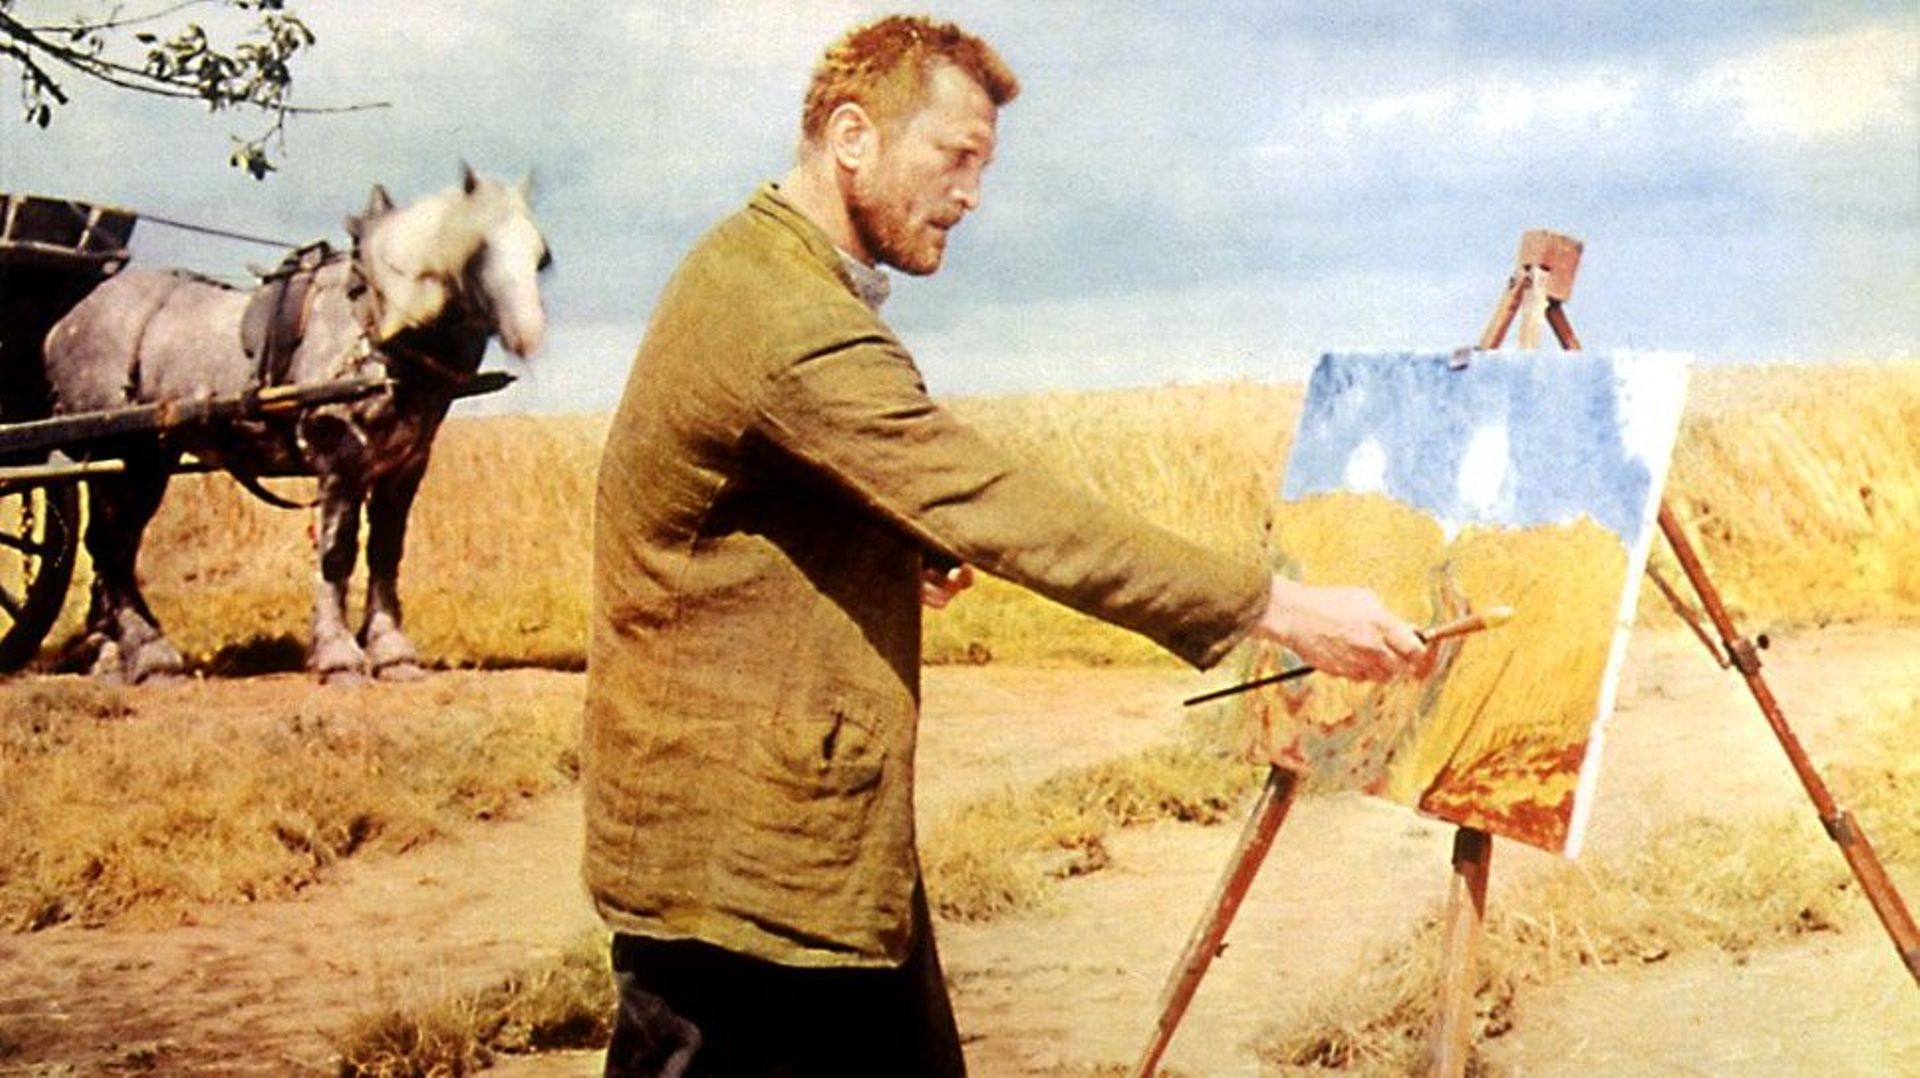 Van Gogh sur facebook, renaissance virtuelle